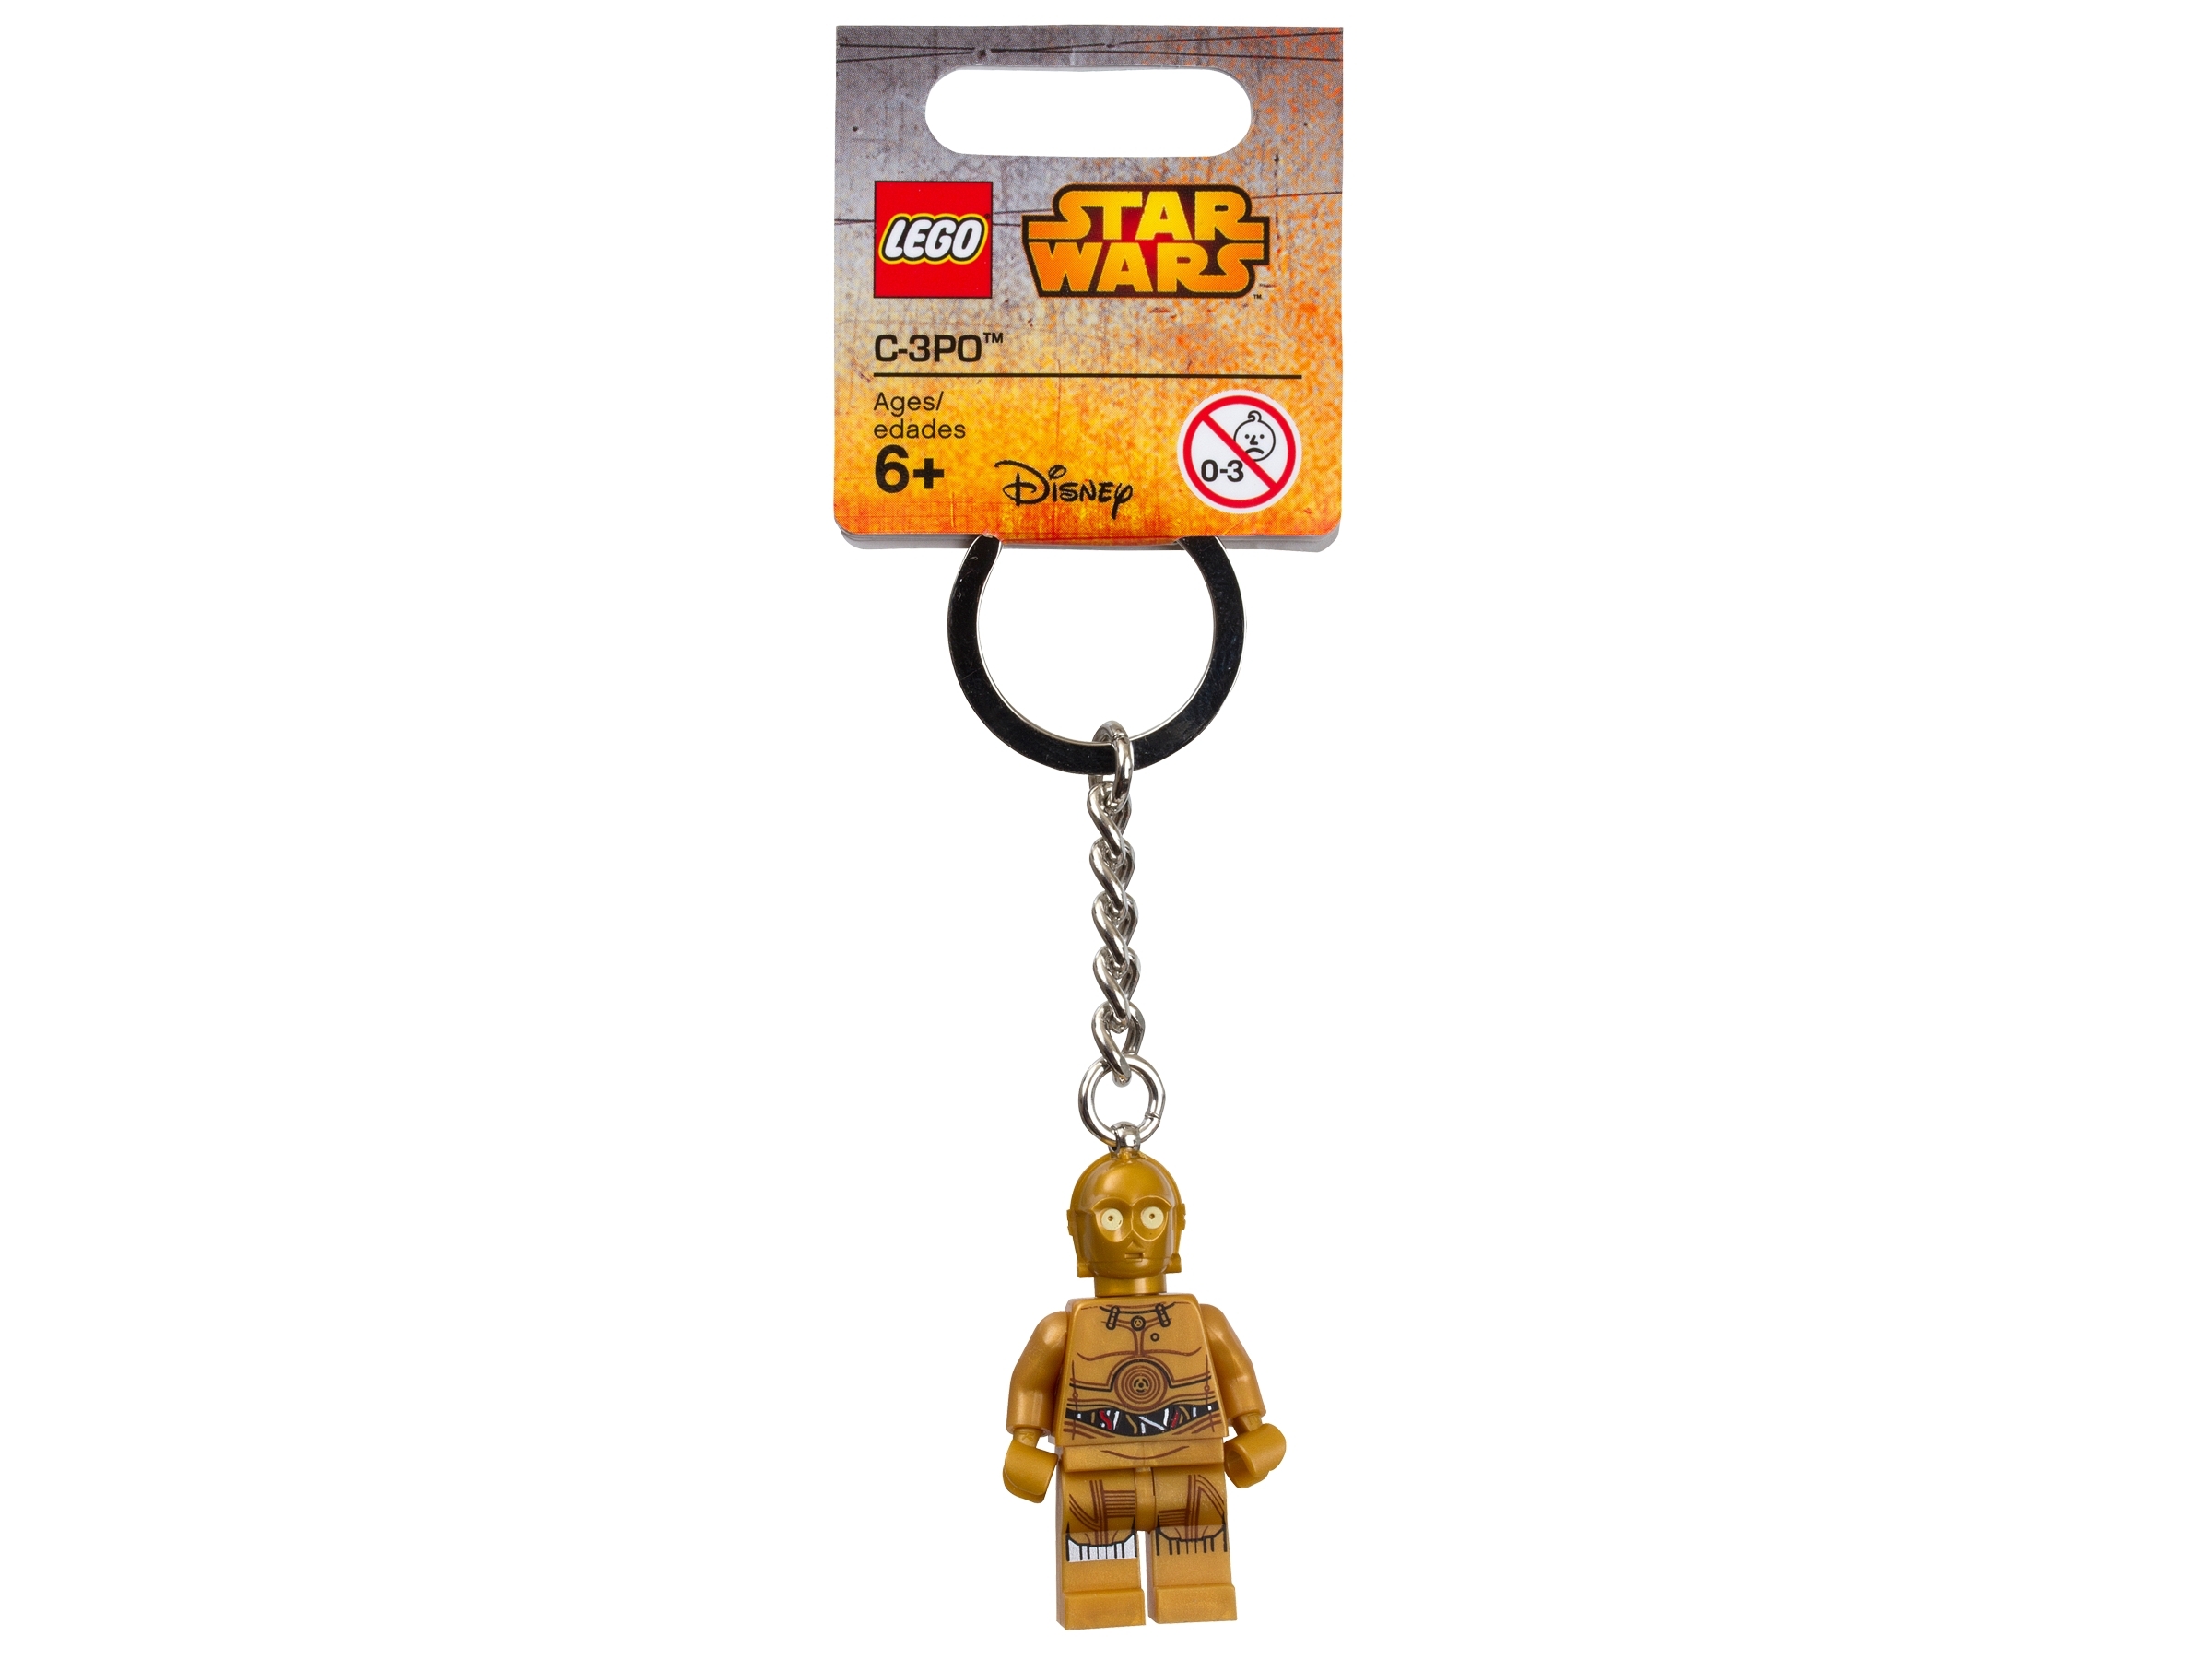 Lego Schlüsselanhänger STAR WARS C-3PO 853471 Keychain